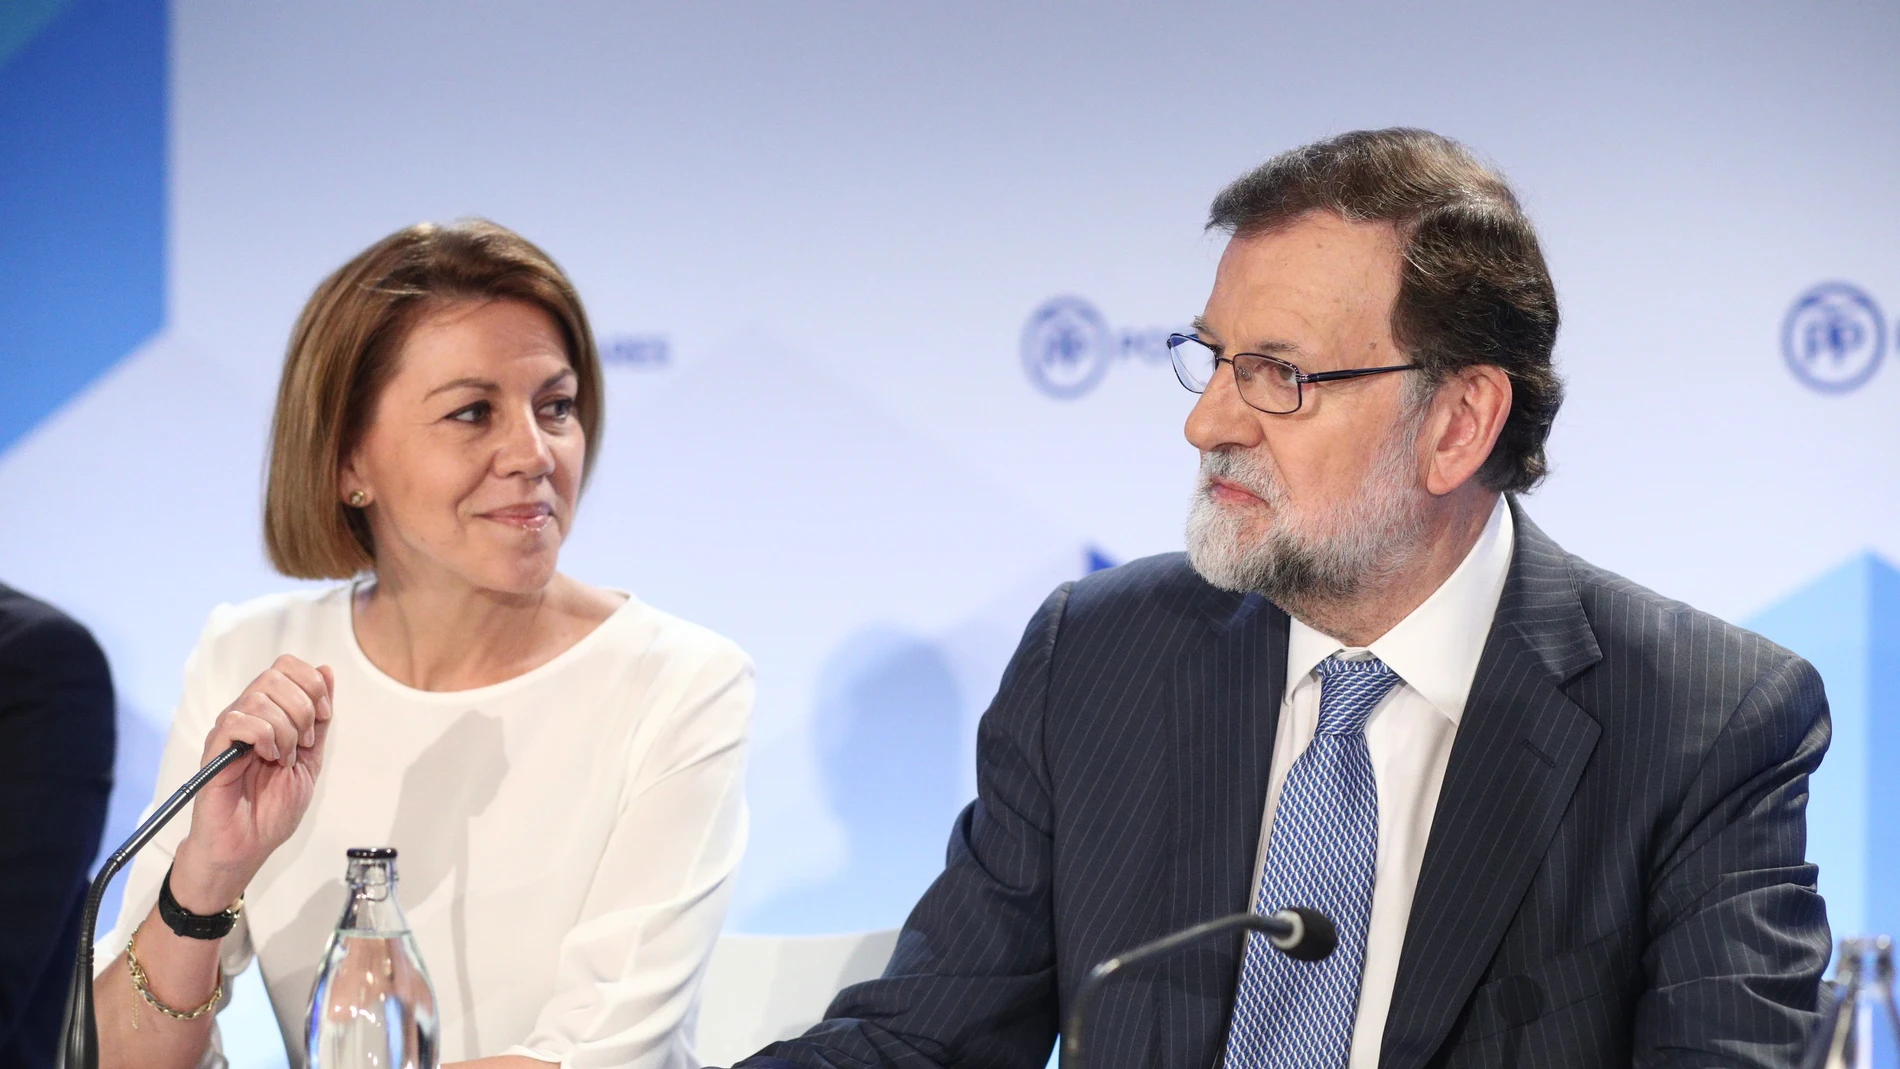 El exnúmero 2 de Interior al presidente de la A.Nacional: "Mi error fue ser leal a miserables como Jorge, Rajoy o Cospe"